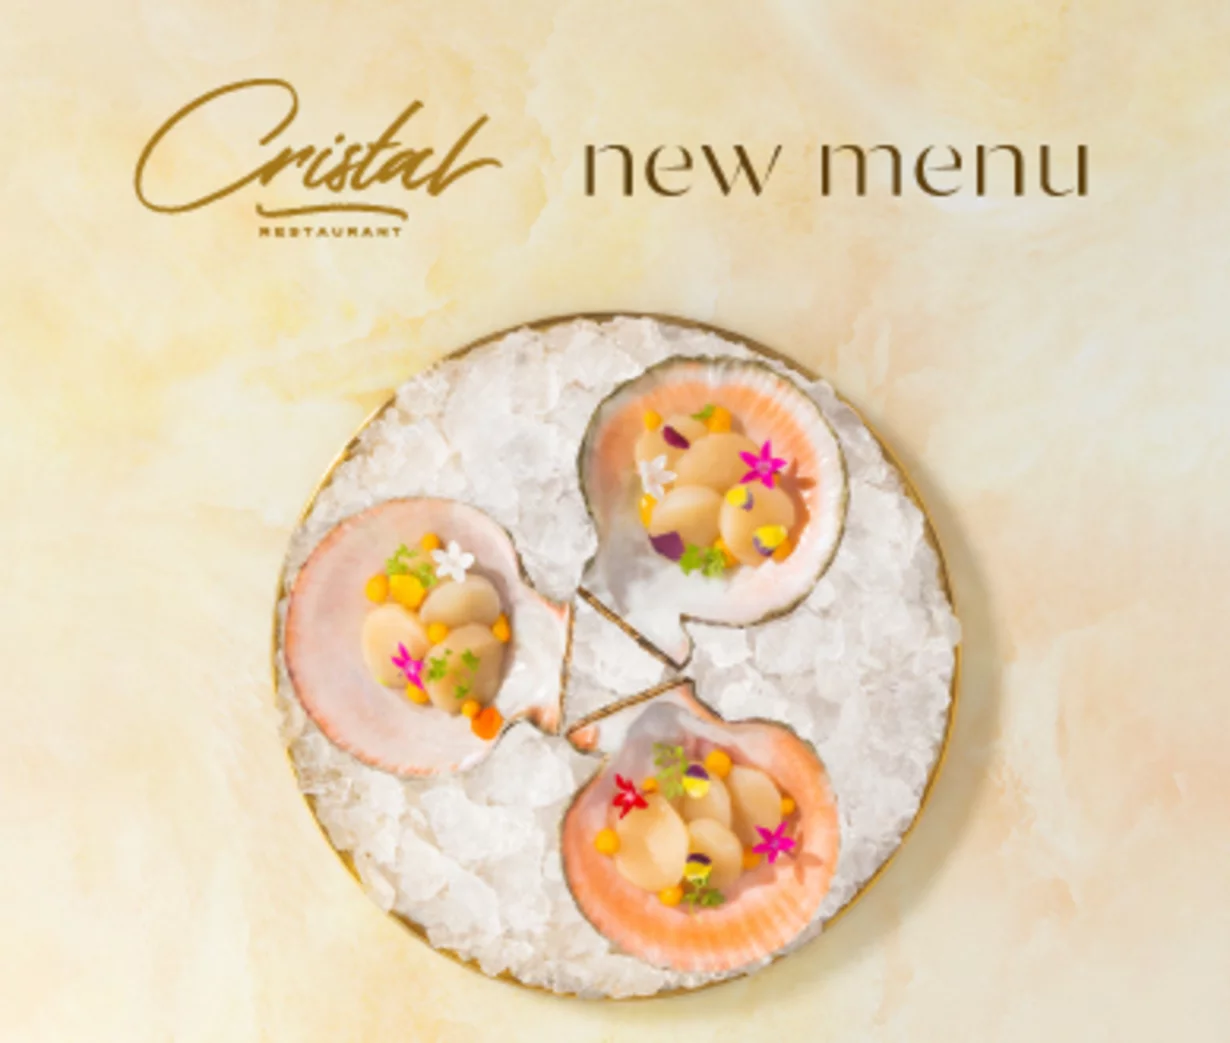 New menu в ресторане Cristal